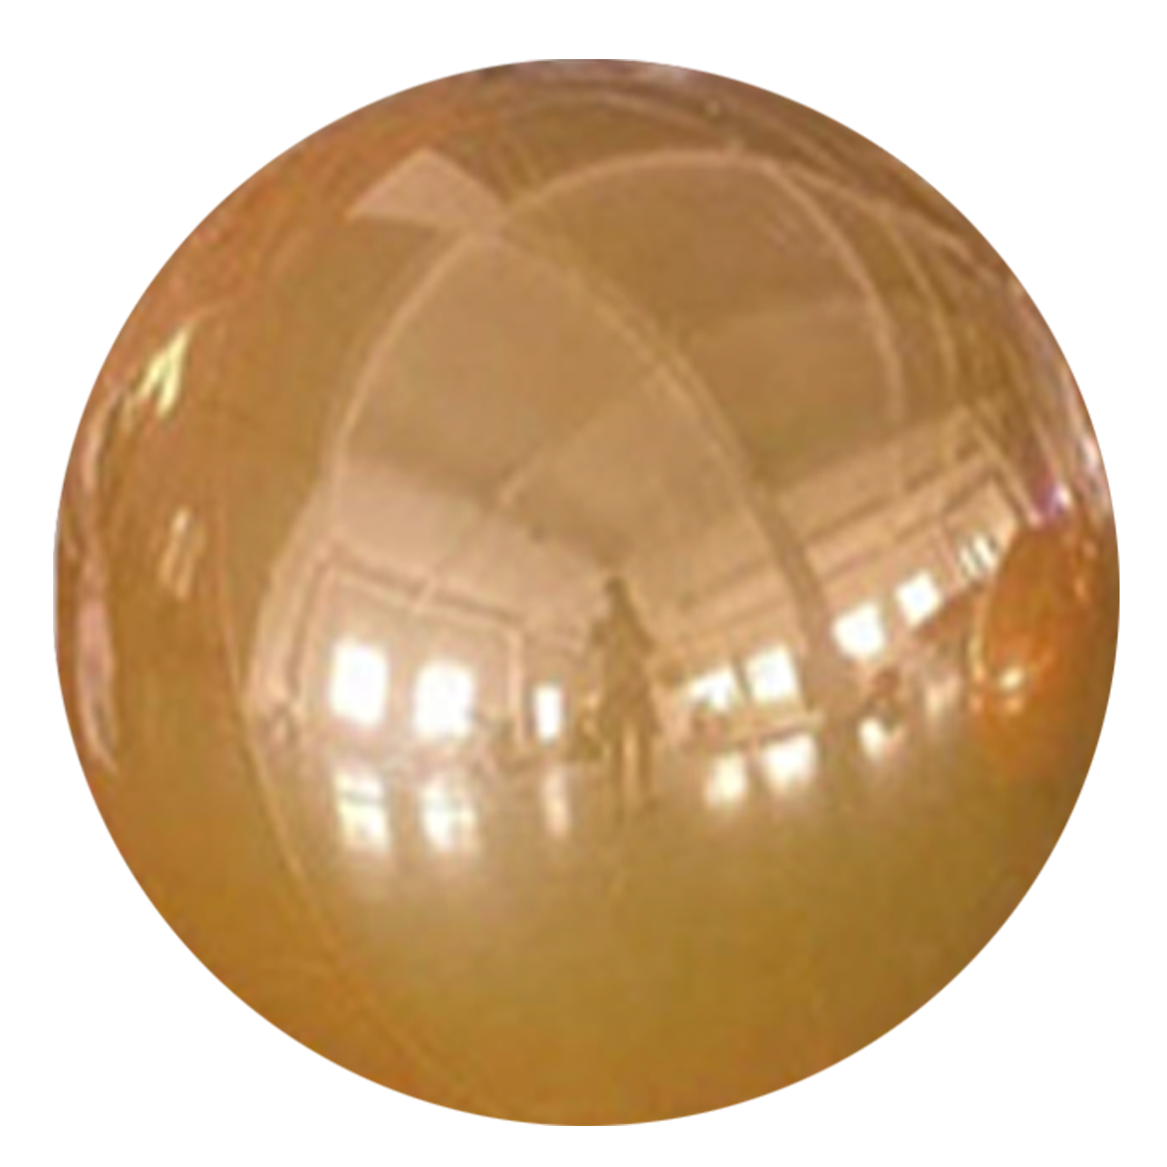 Buy Inflatable 300 centimeters Shiny Round Orange   Sphere